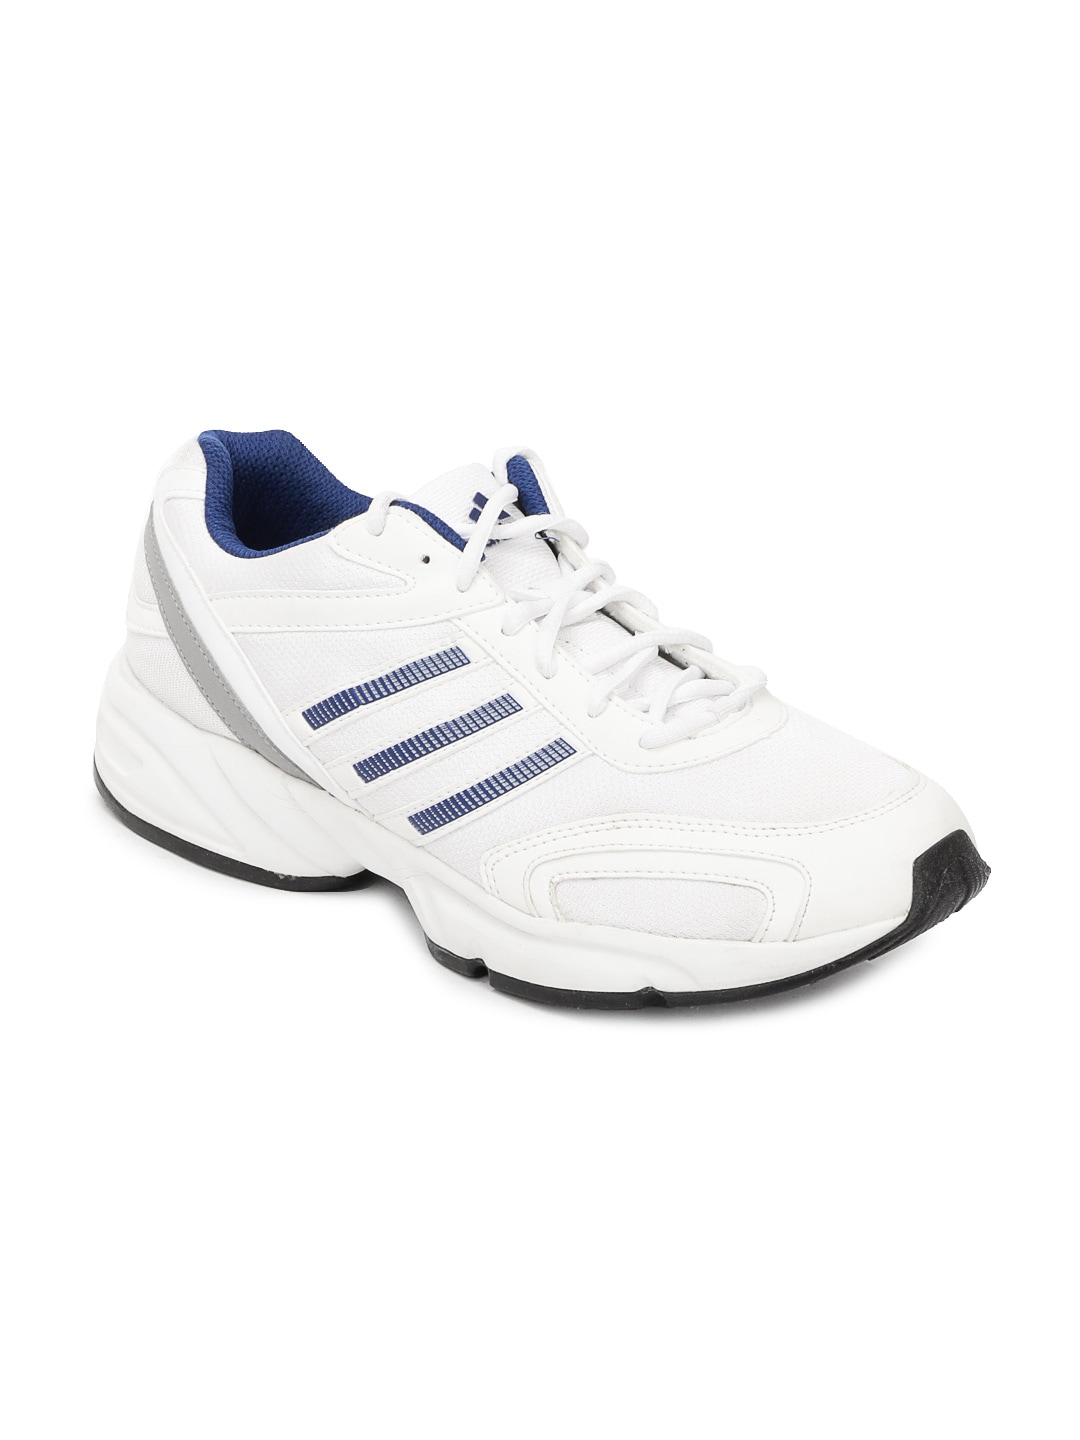 ADIDAS Men White Desma Sports Shoes